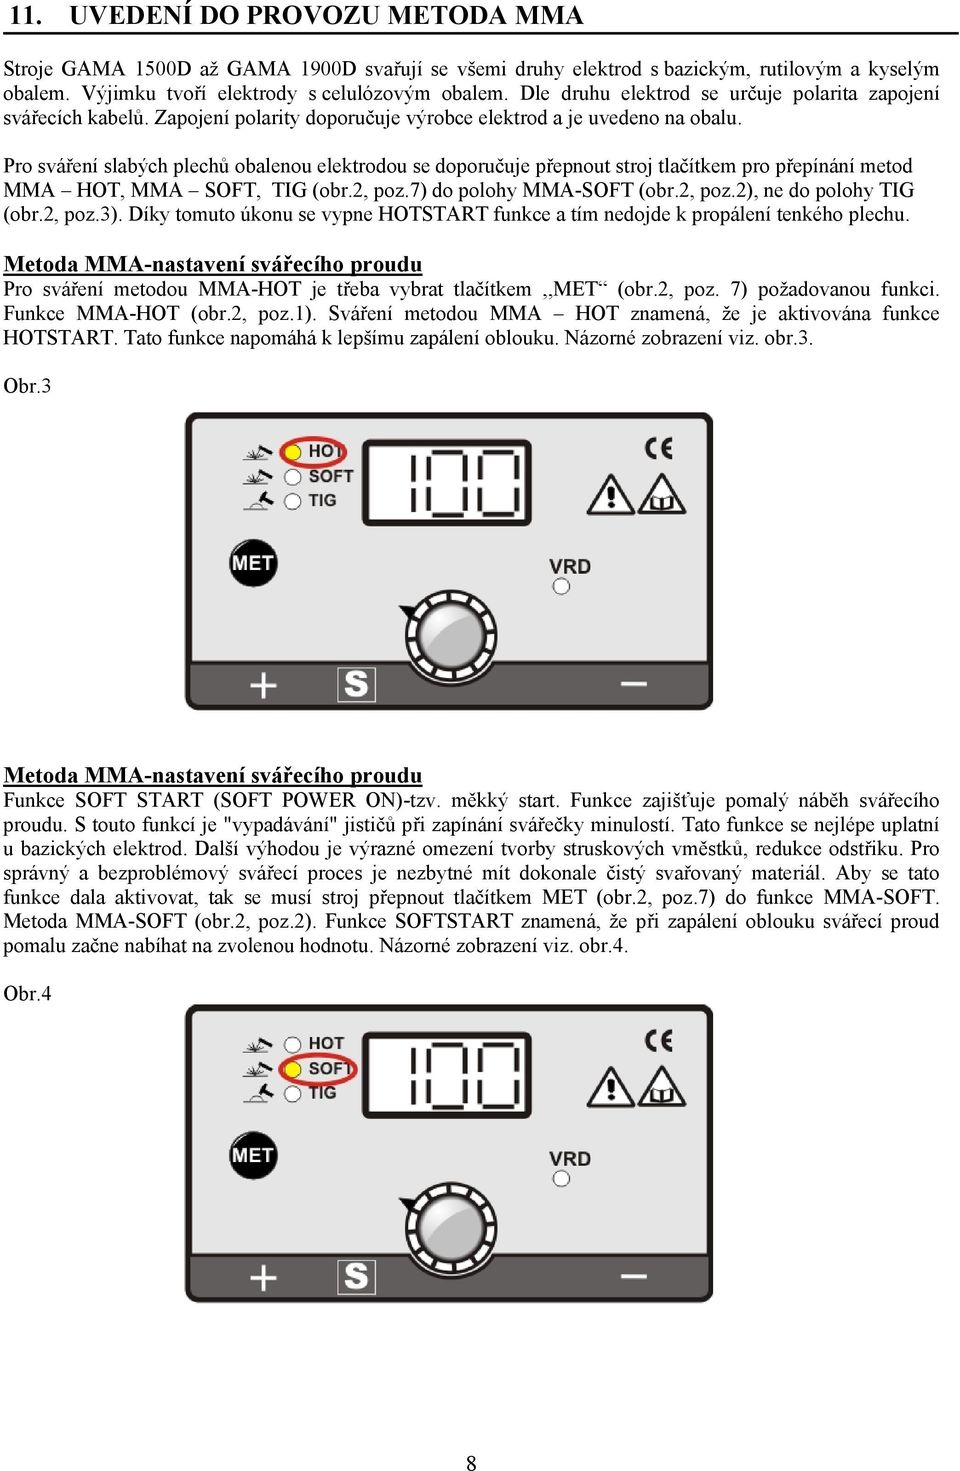 Pro sváření slabých plechů obalenou elektrodou se doporučuje přepnout stroj tlačítkem pro přepínání metod MMA HOT, MMA SOFT, TIG (obr.2, poz.7) do polohy MMA-SOFT (obr.2, poz.2), ne do polohy TIG (obr.